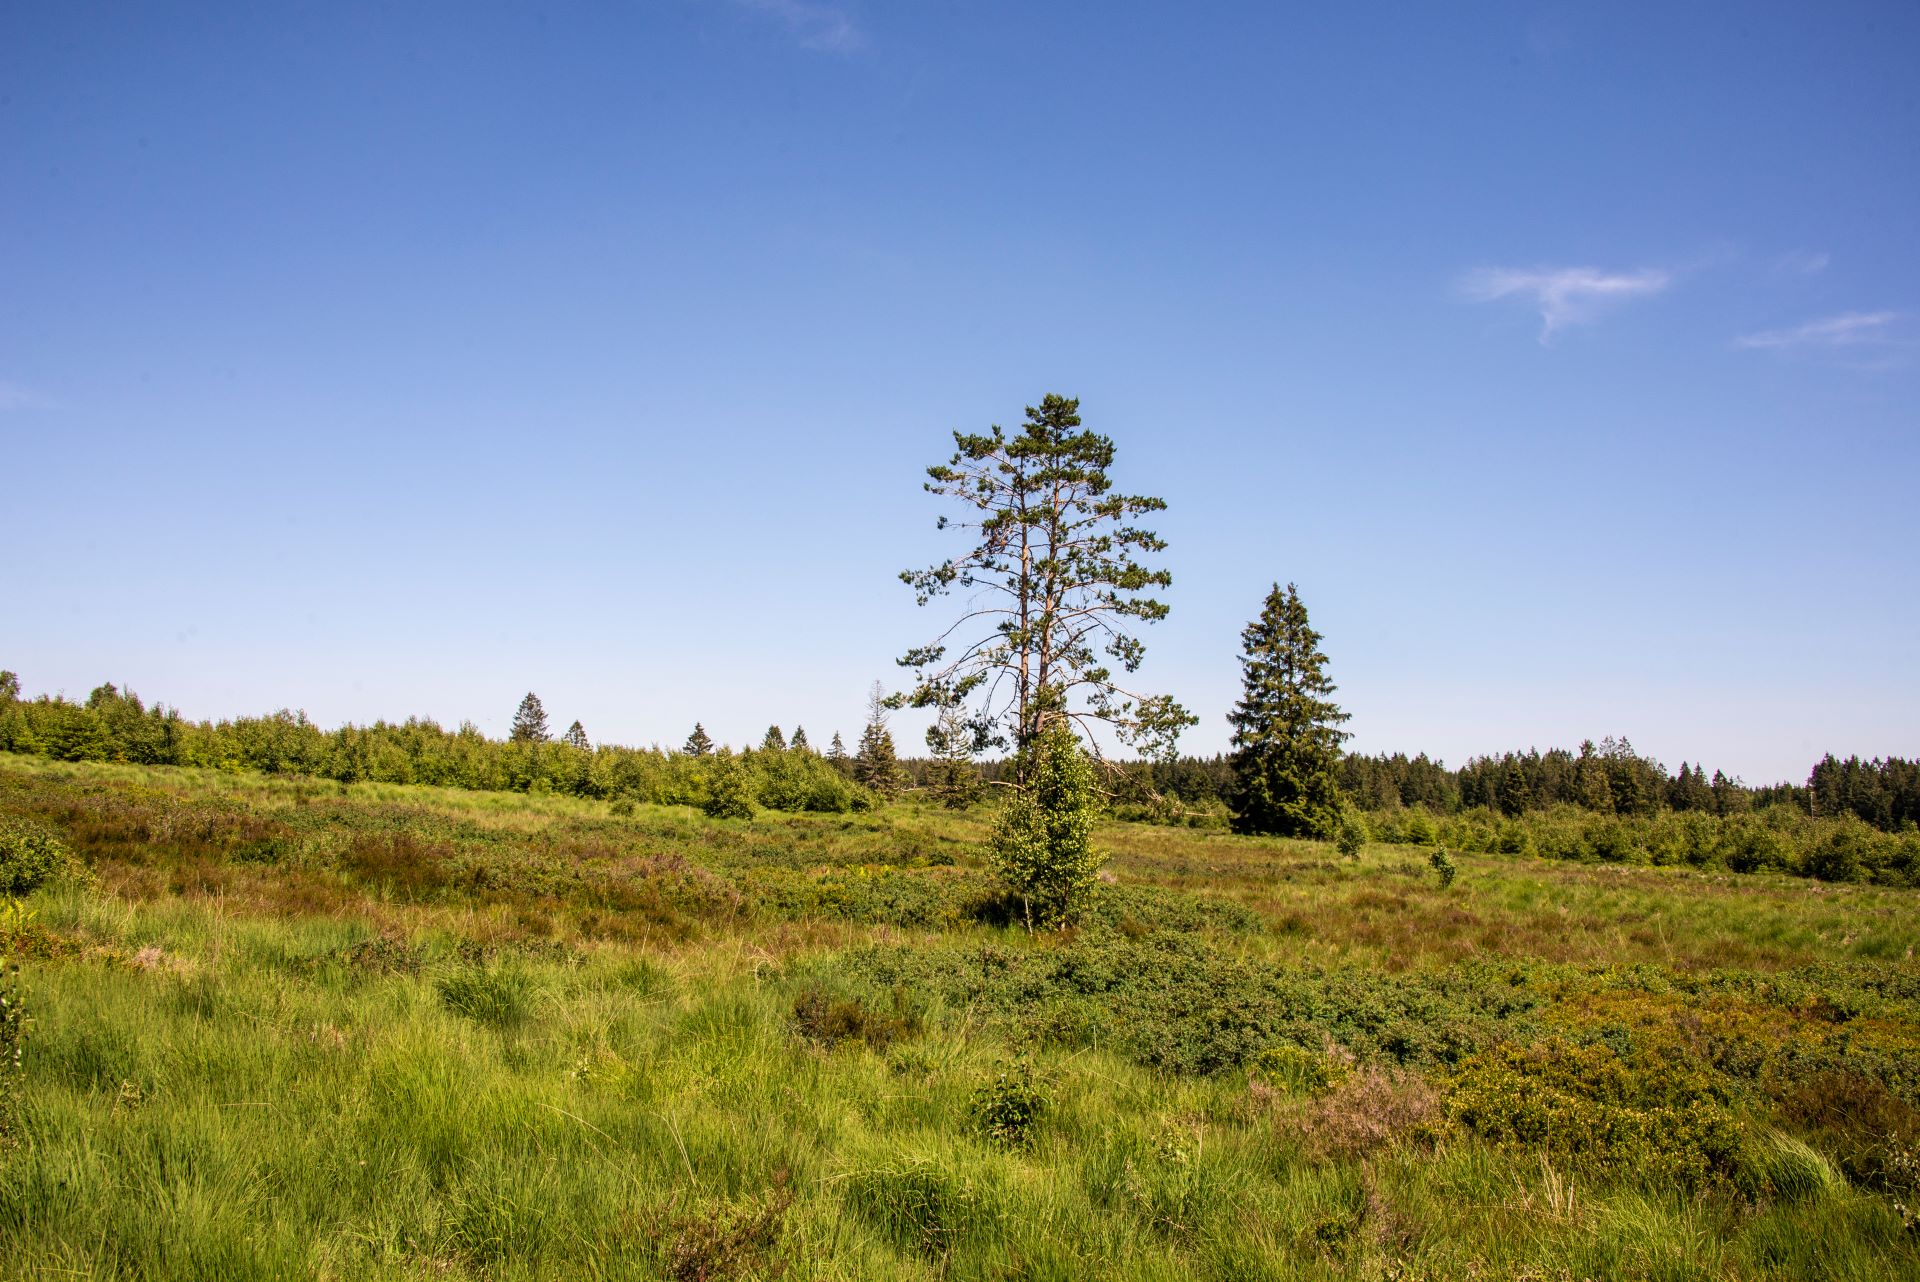 Un arbre solitaire se dresse au milieu de l'image. Le ciel bleu et la nature verte entourent l'arbre, avec la forêt en arrière-plan.